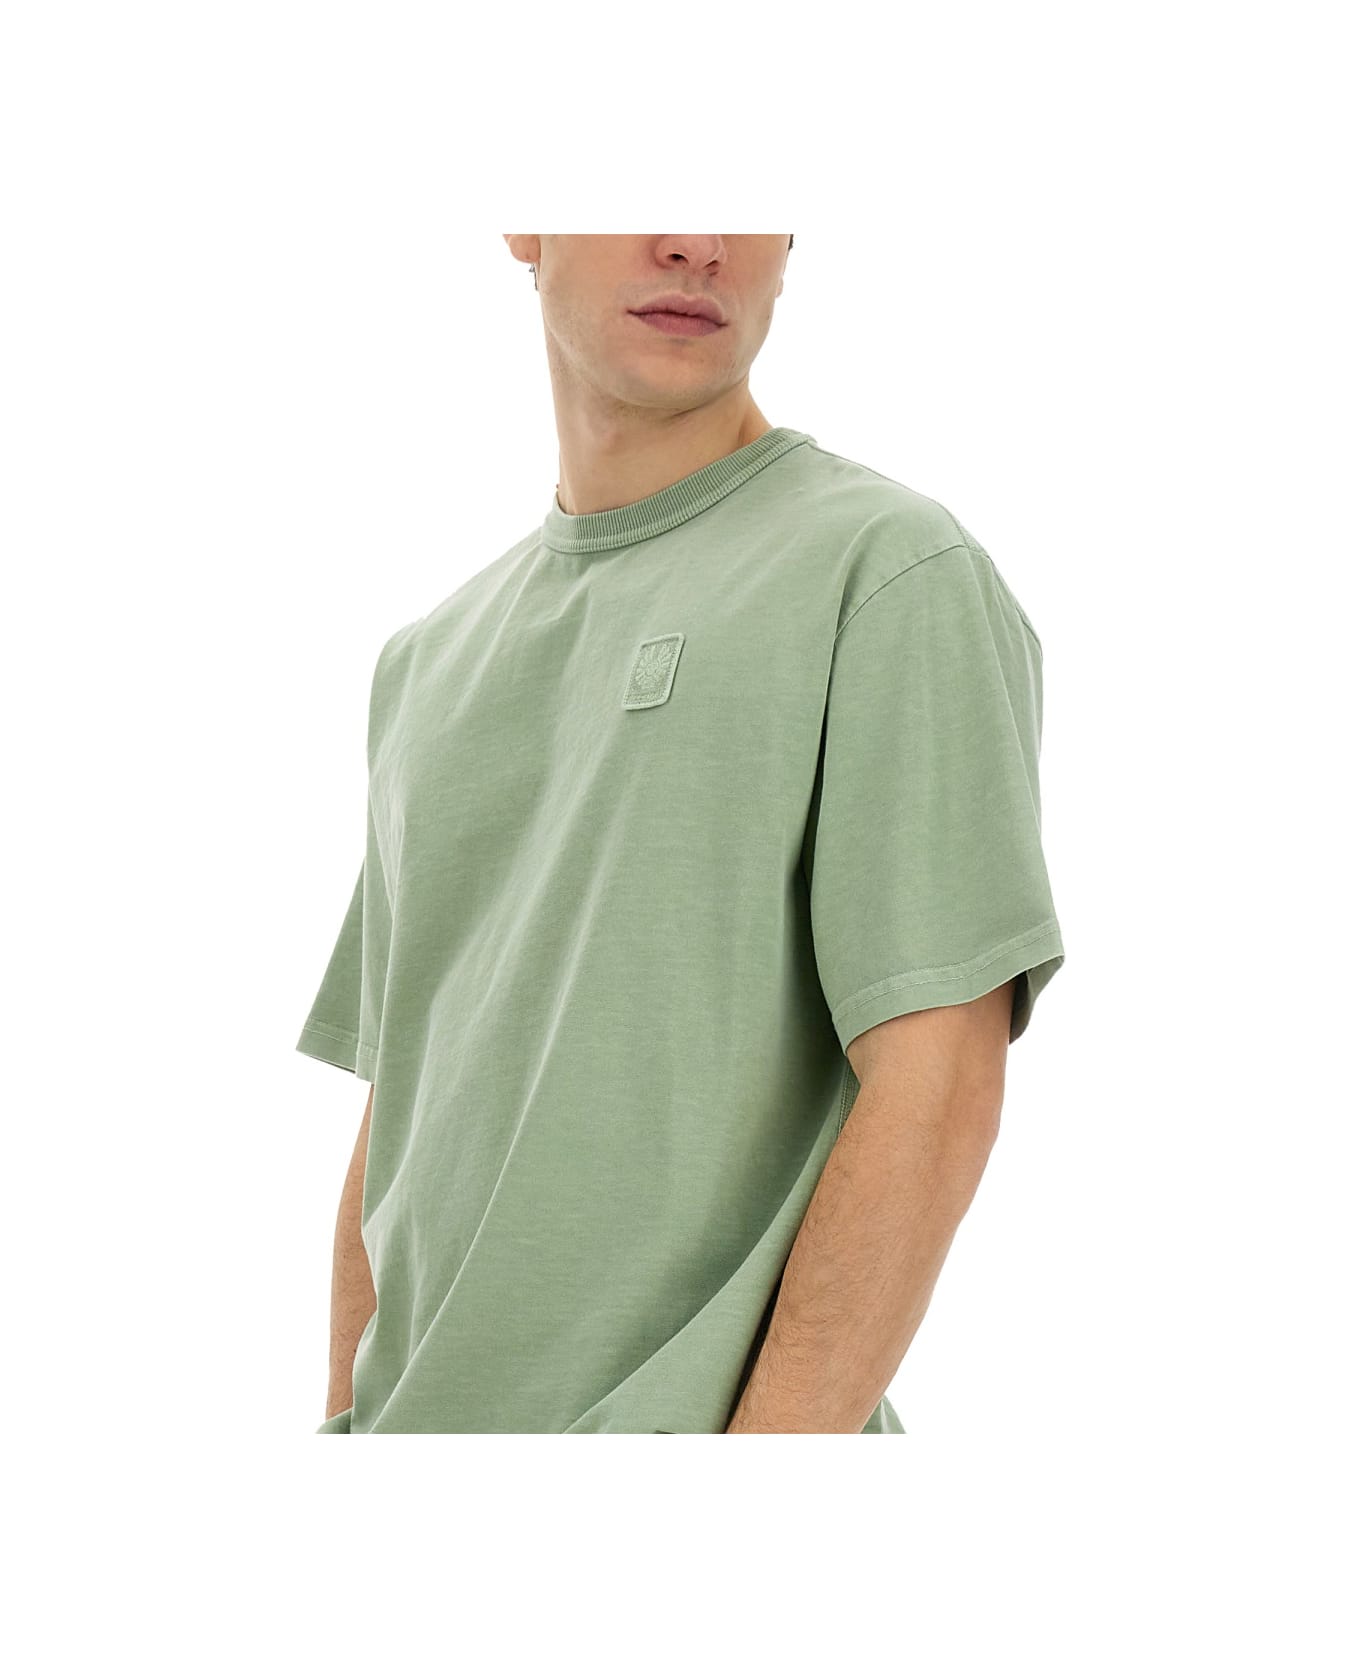 Belstaff T-shirt With Logo - GREEN